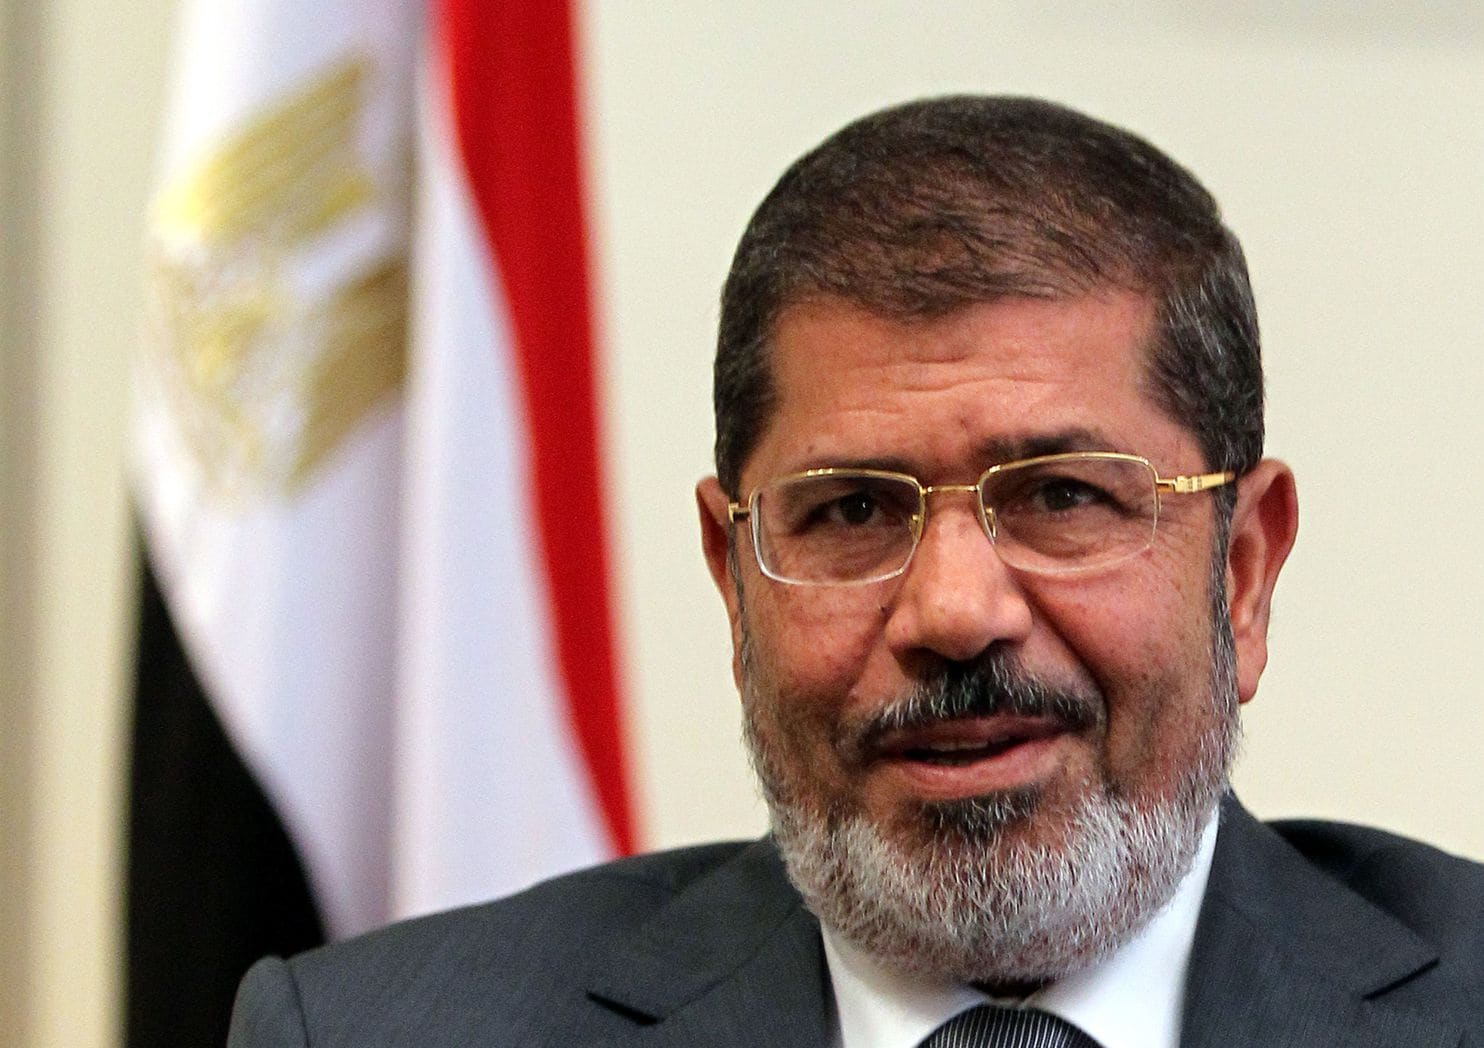 Former Egyptian President Morsi died in Cairo